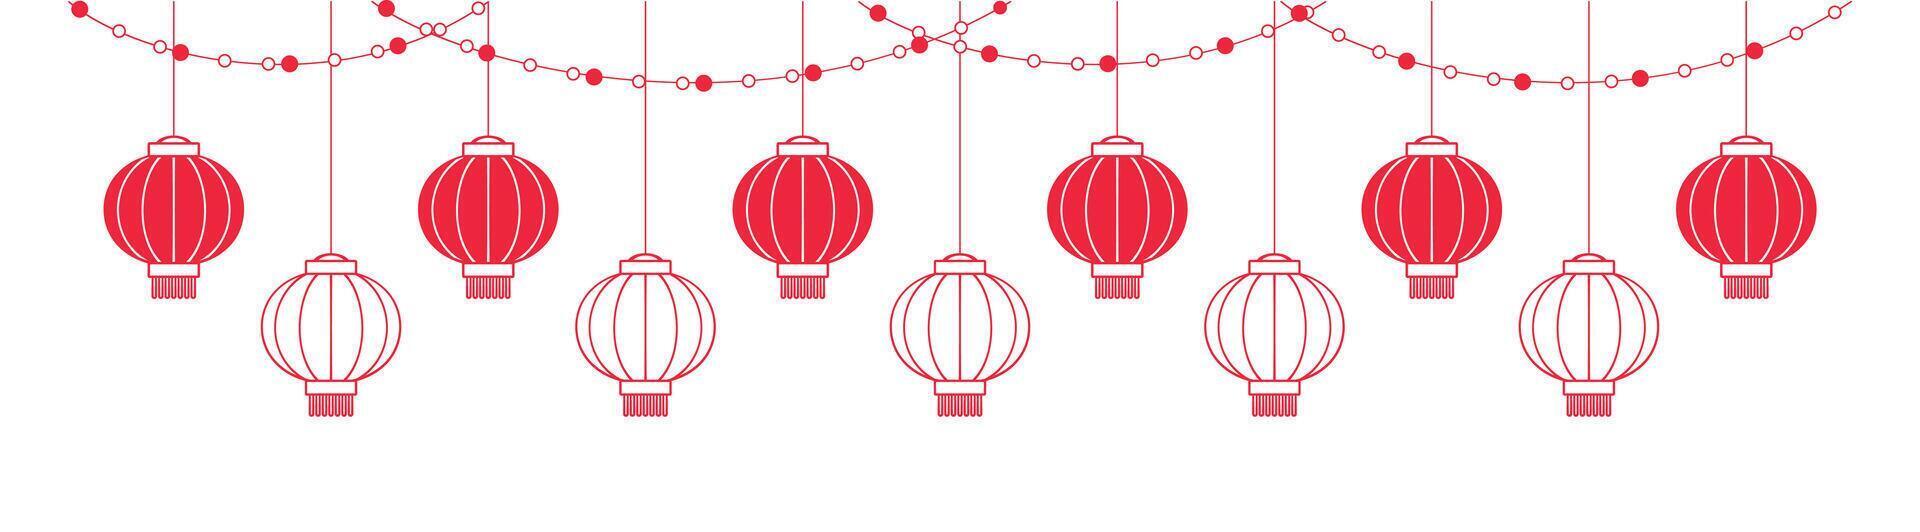 sospeso Cinese nuovo anno lanterne bandiera confine, lunare nuovo anno e metà autunno Festival grafico vettore